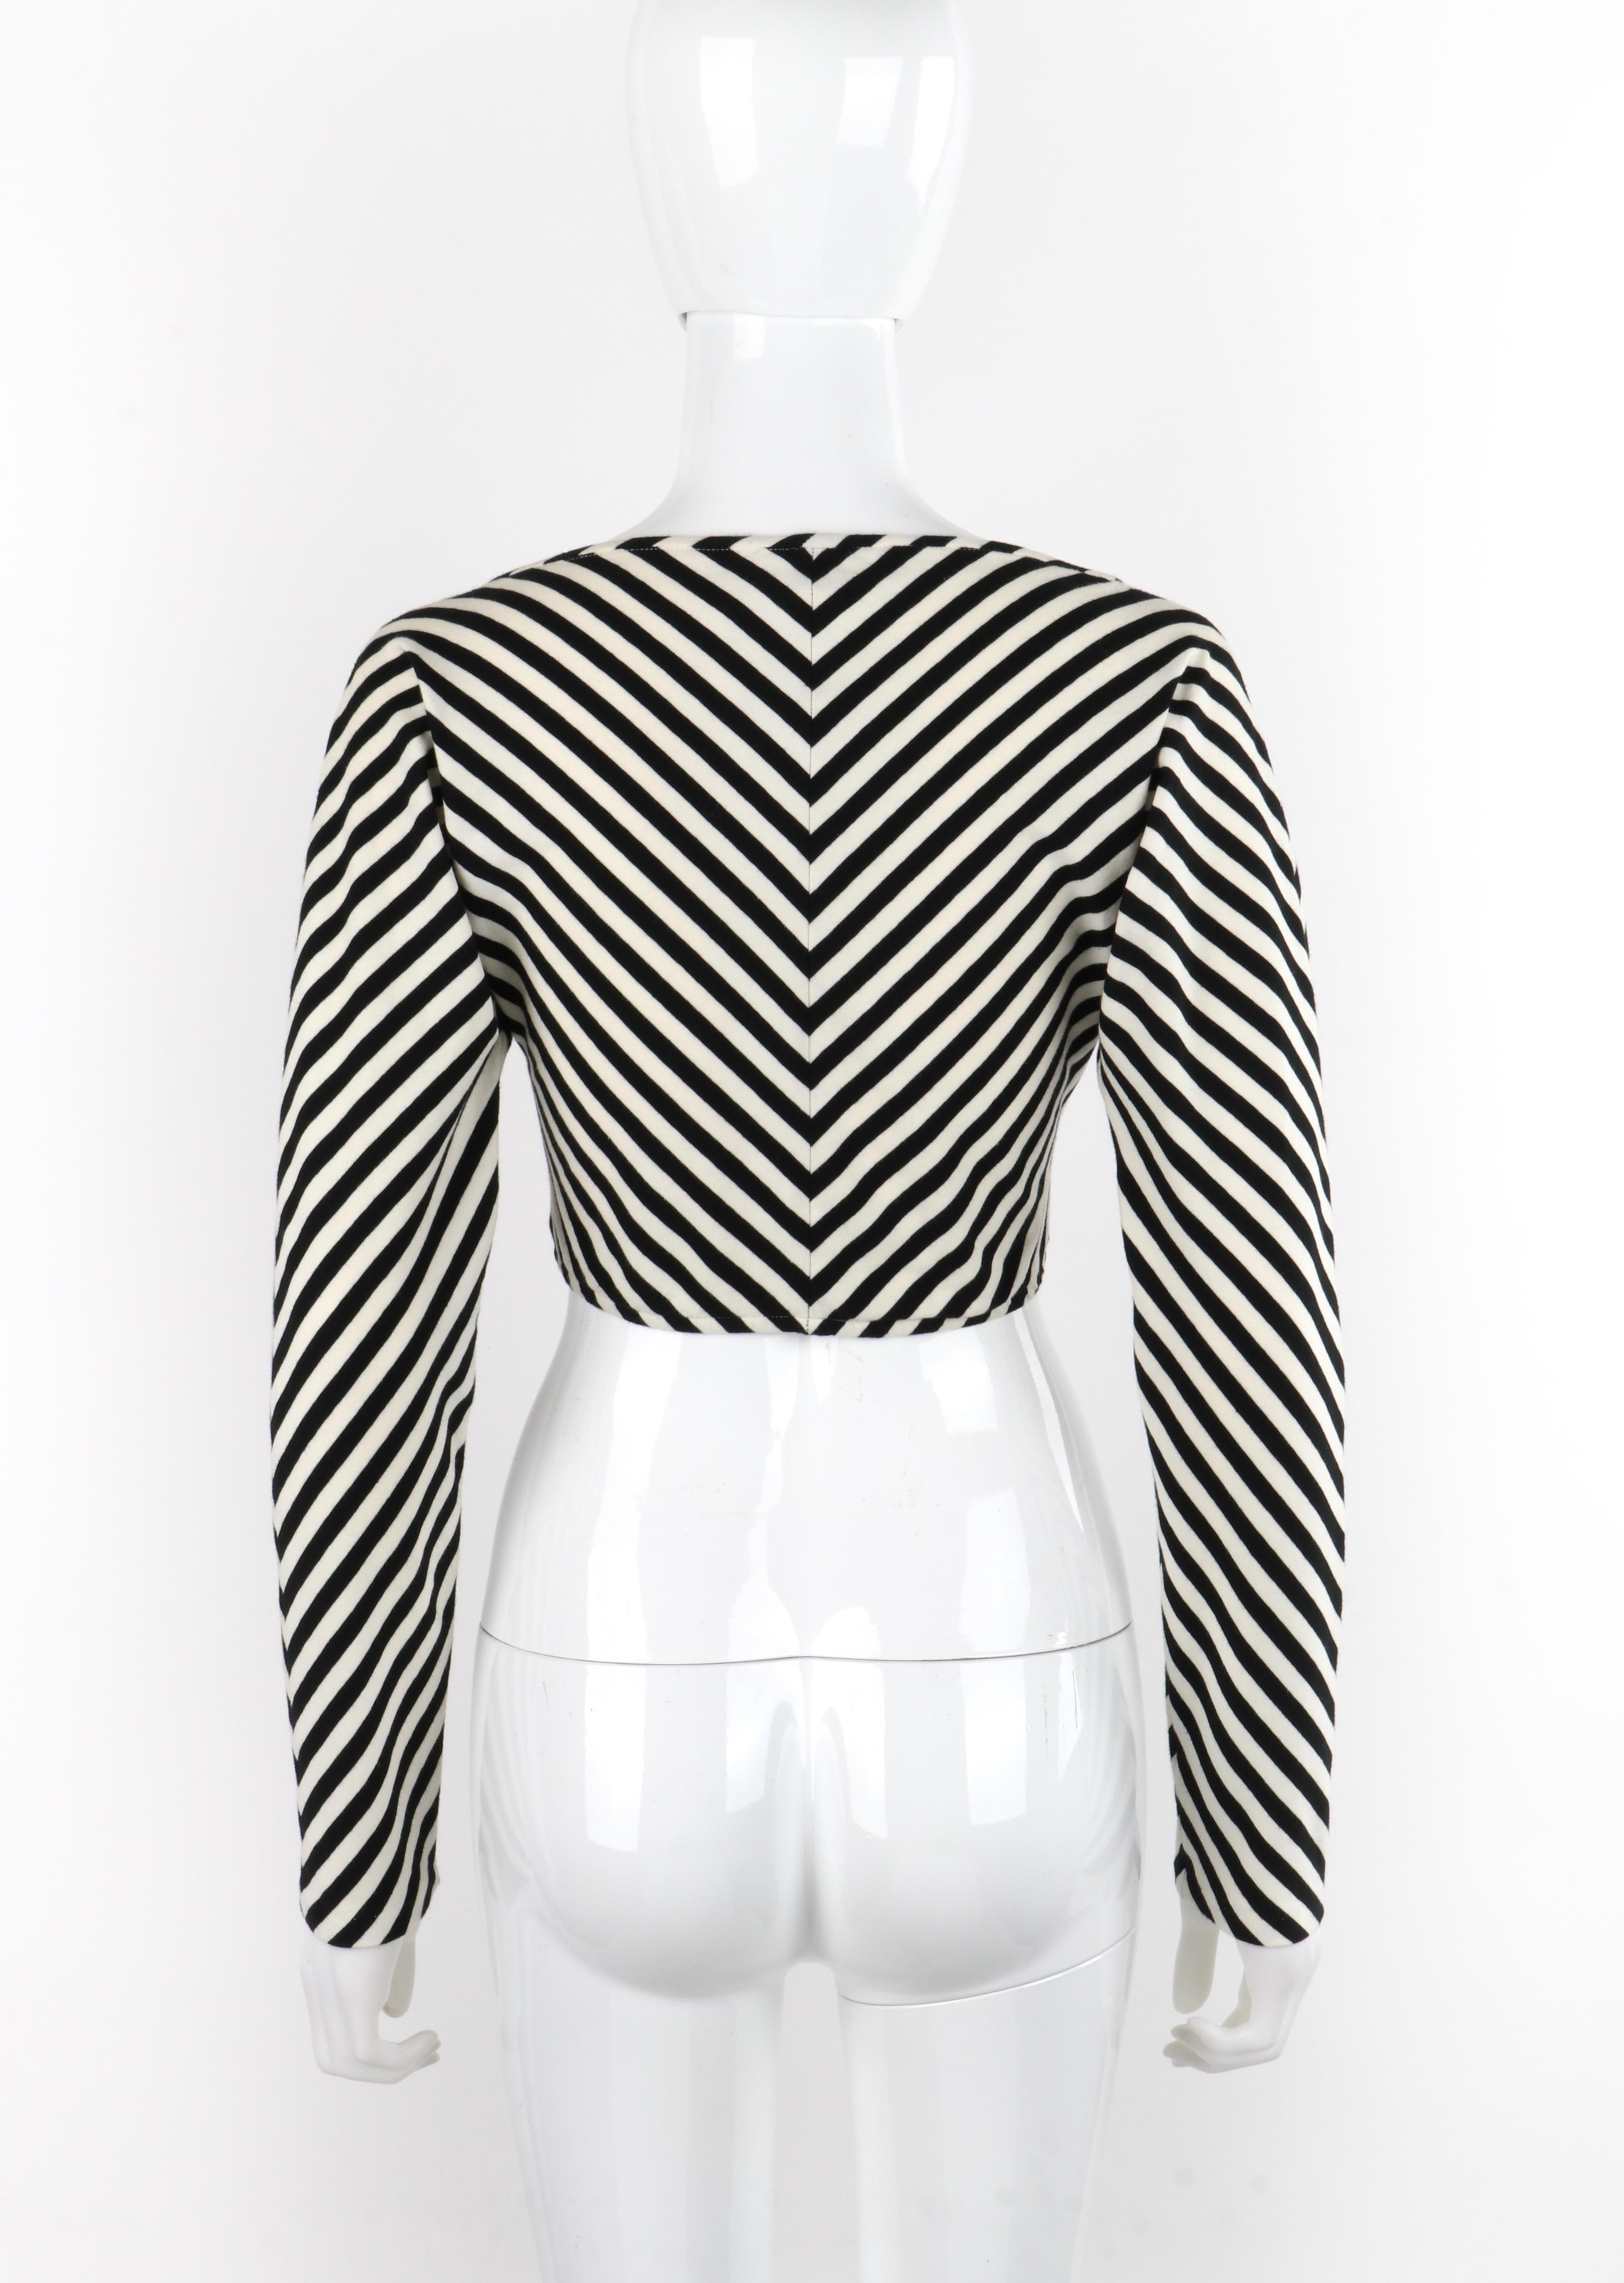 OMO NORMA KAMALI Haut à manches longues courtes rayé noir et blanc, années 1980 Pour femmes en vente